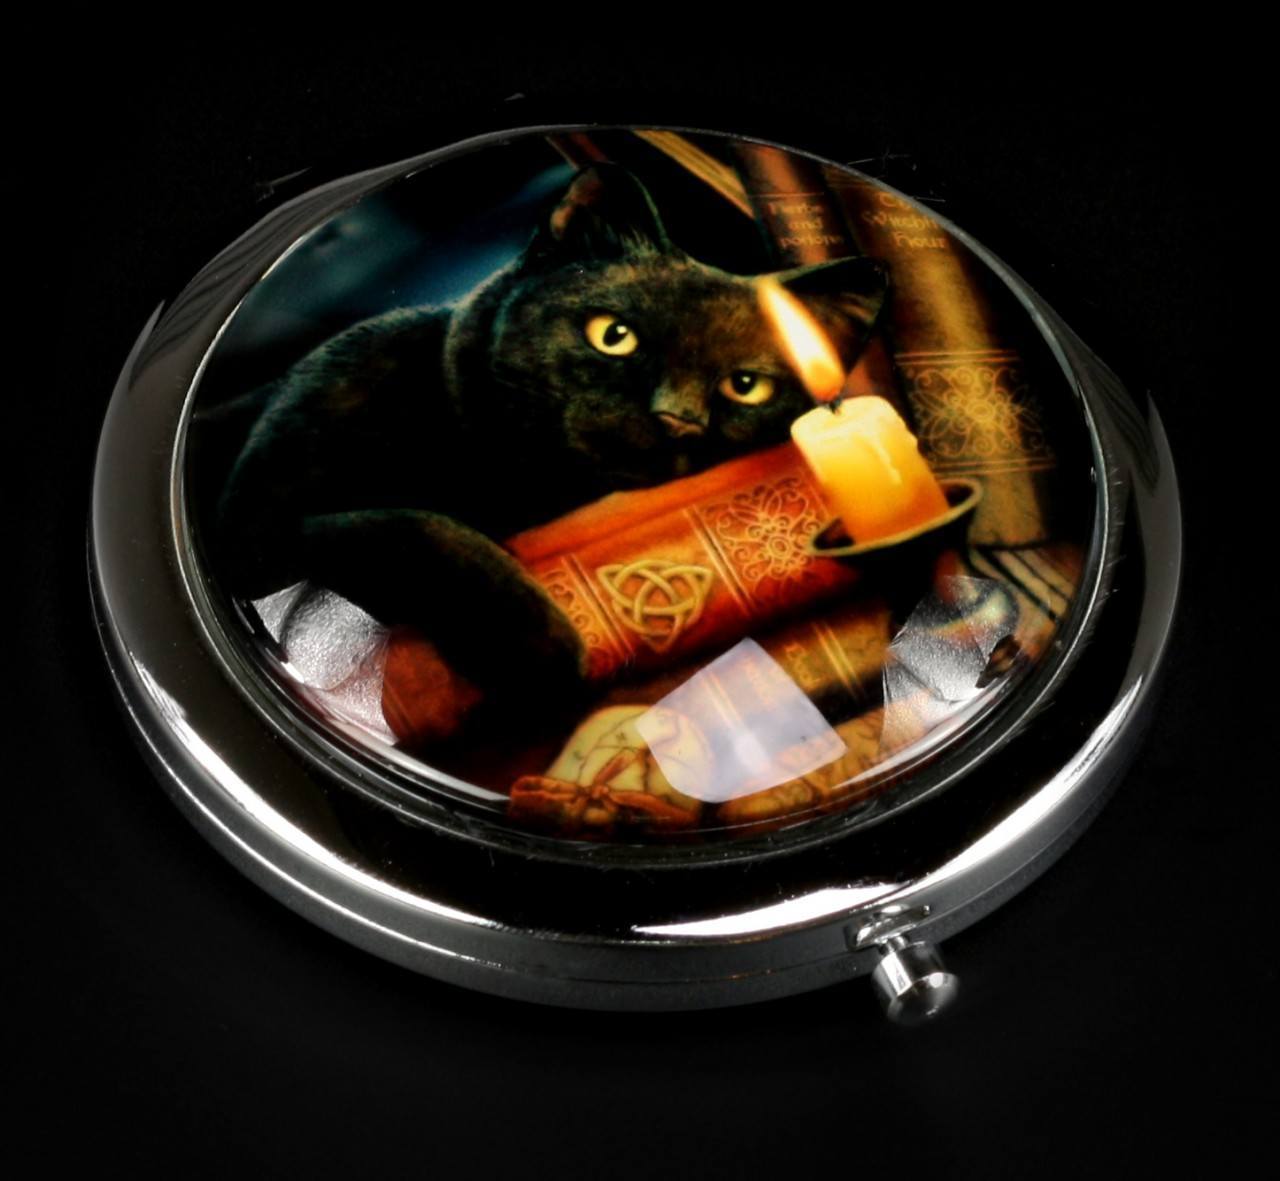 Taschenspiegel mit Katze - The Witching Hour